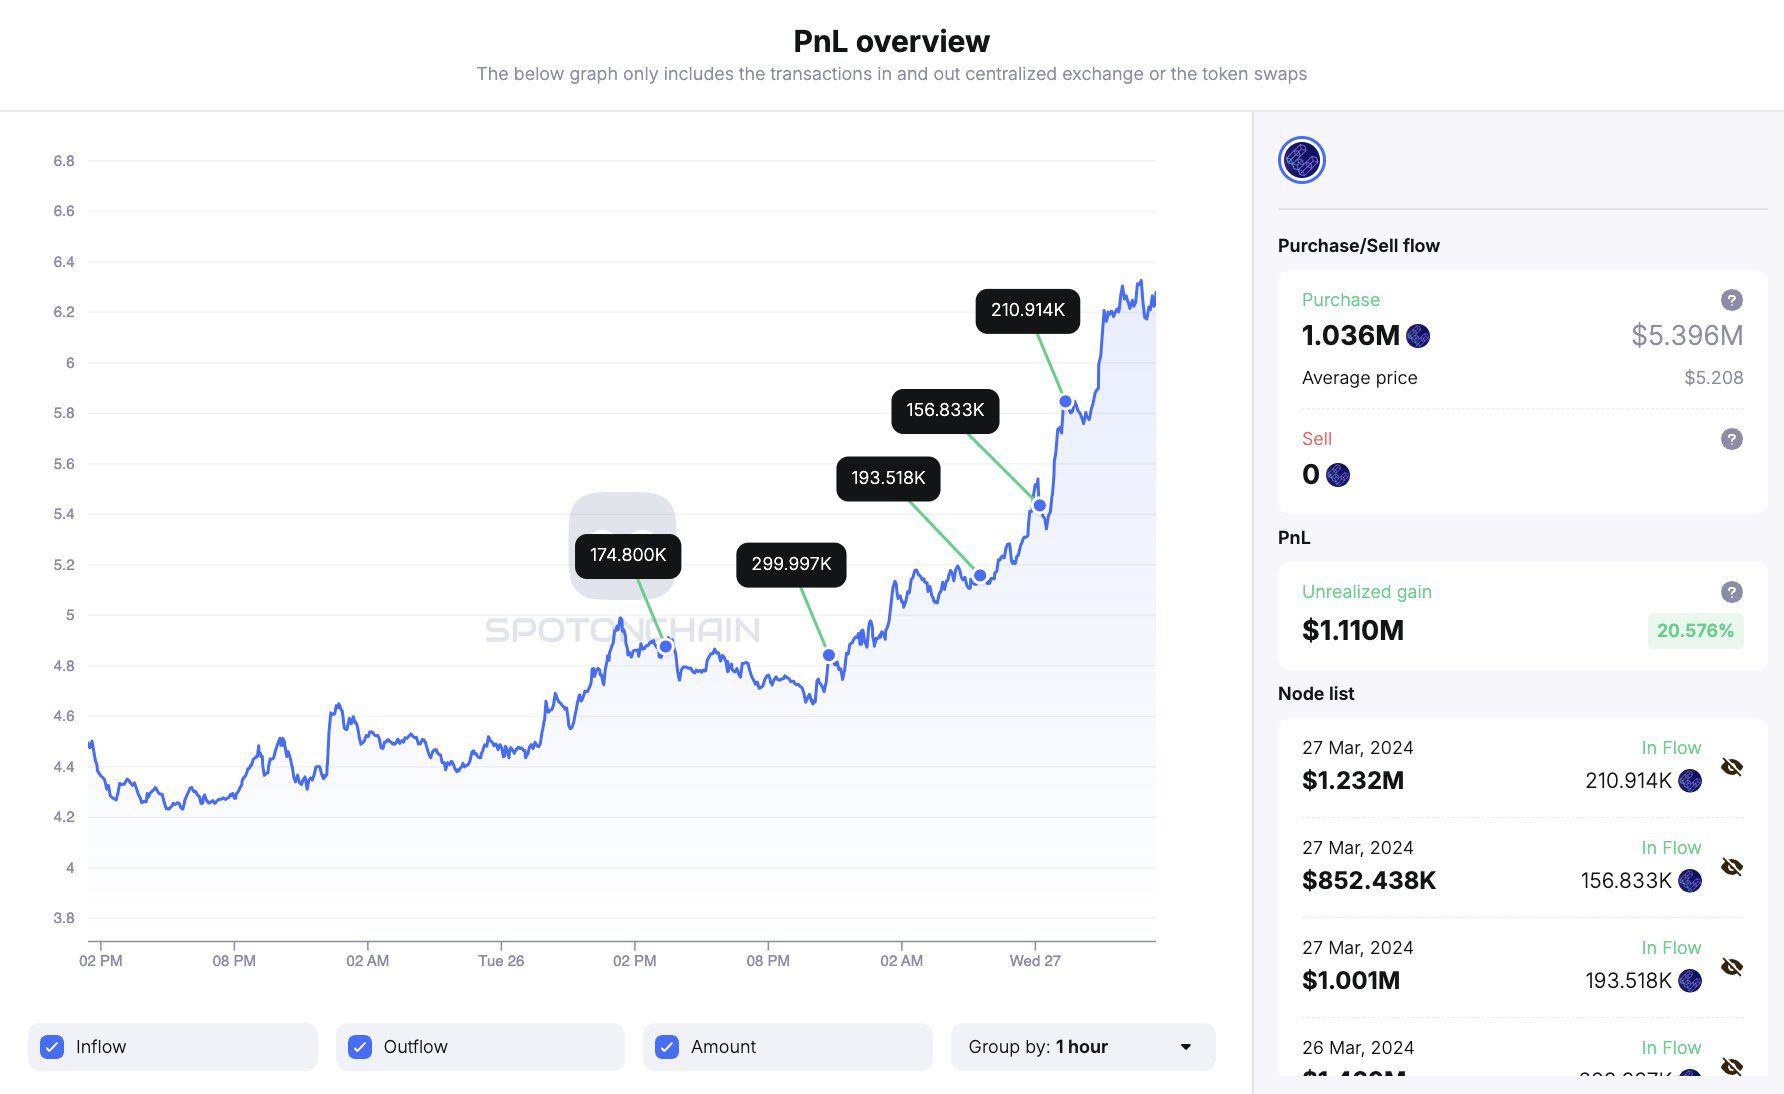 En apenas 10 días, ETHFI ha revolucionado el panorama de staking en Ethereum, experimentando un asombroso aumento de más de un 3.000%.